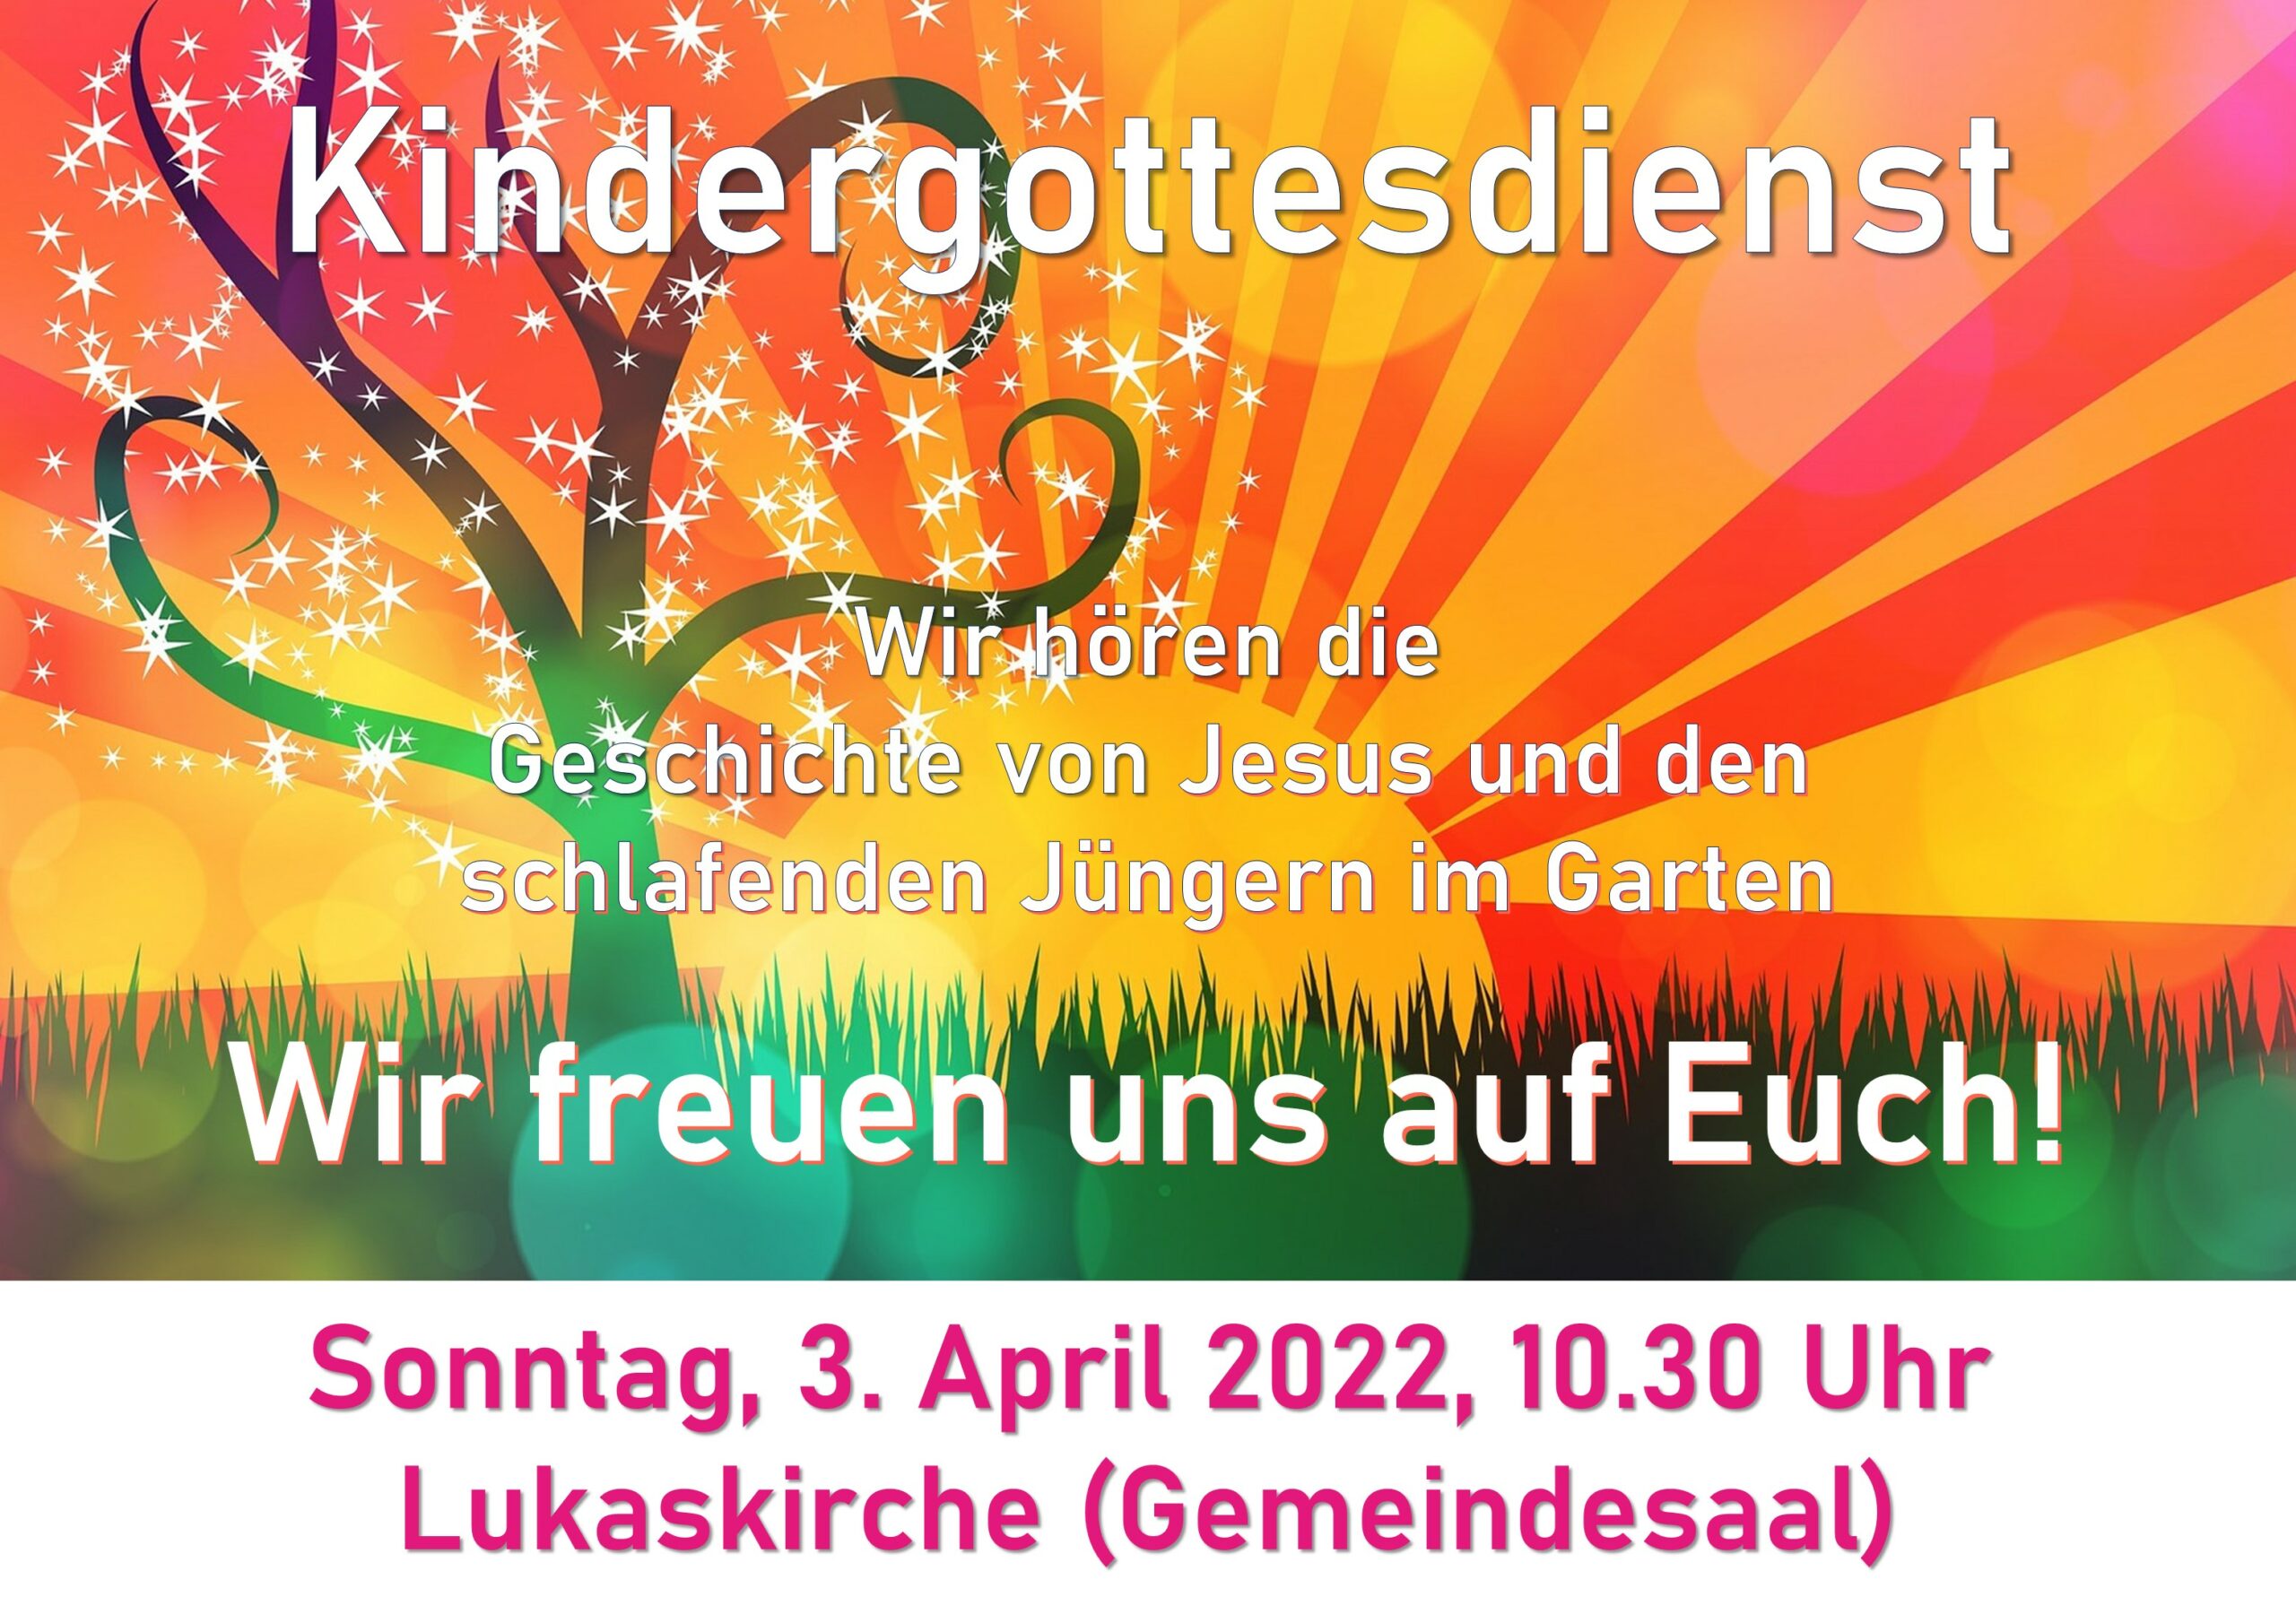 Kindergottesdienst am Sonntag, 03. April 2022, um 10.30 Uhr im Gemeindesaal der Lukaskirche. Wir hören die Geschichte von Jesus und den schlafenden Jüngern im Garten.